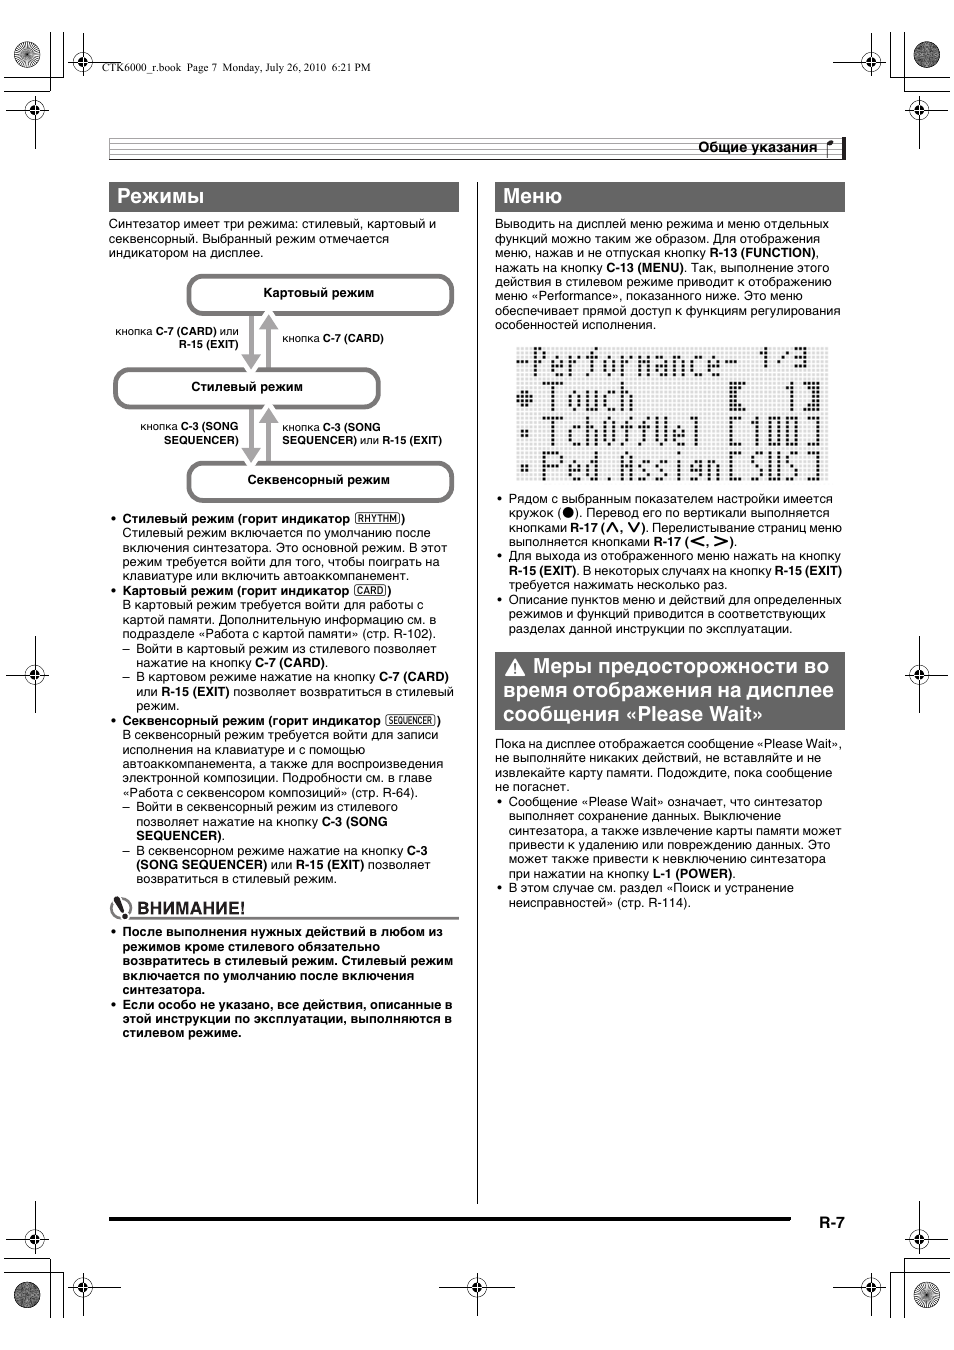 Режимы | Инструкция по эксплуатации Casio CTK-6000 | Страница 8 / 131